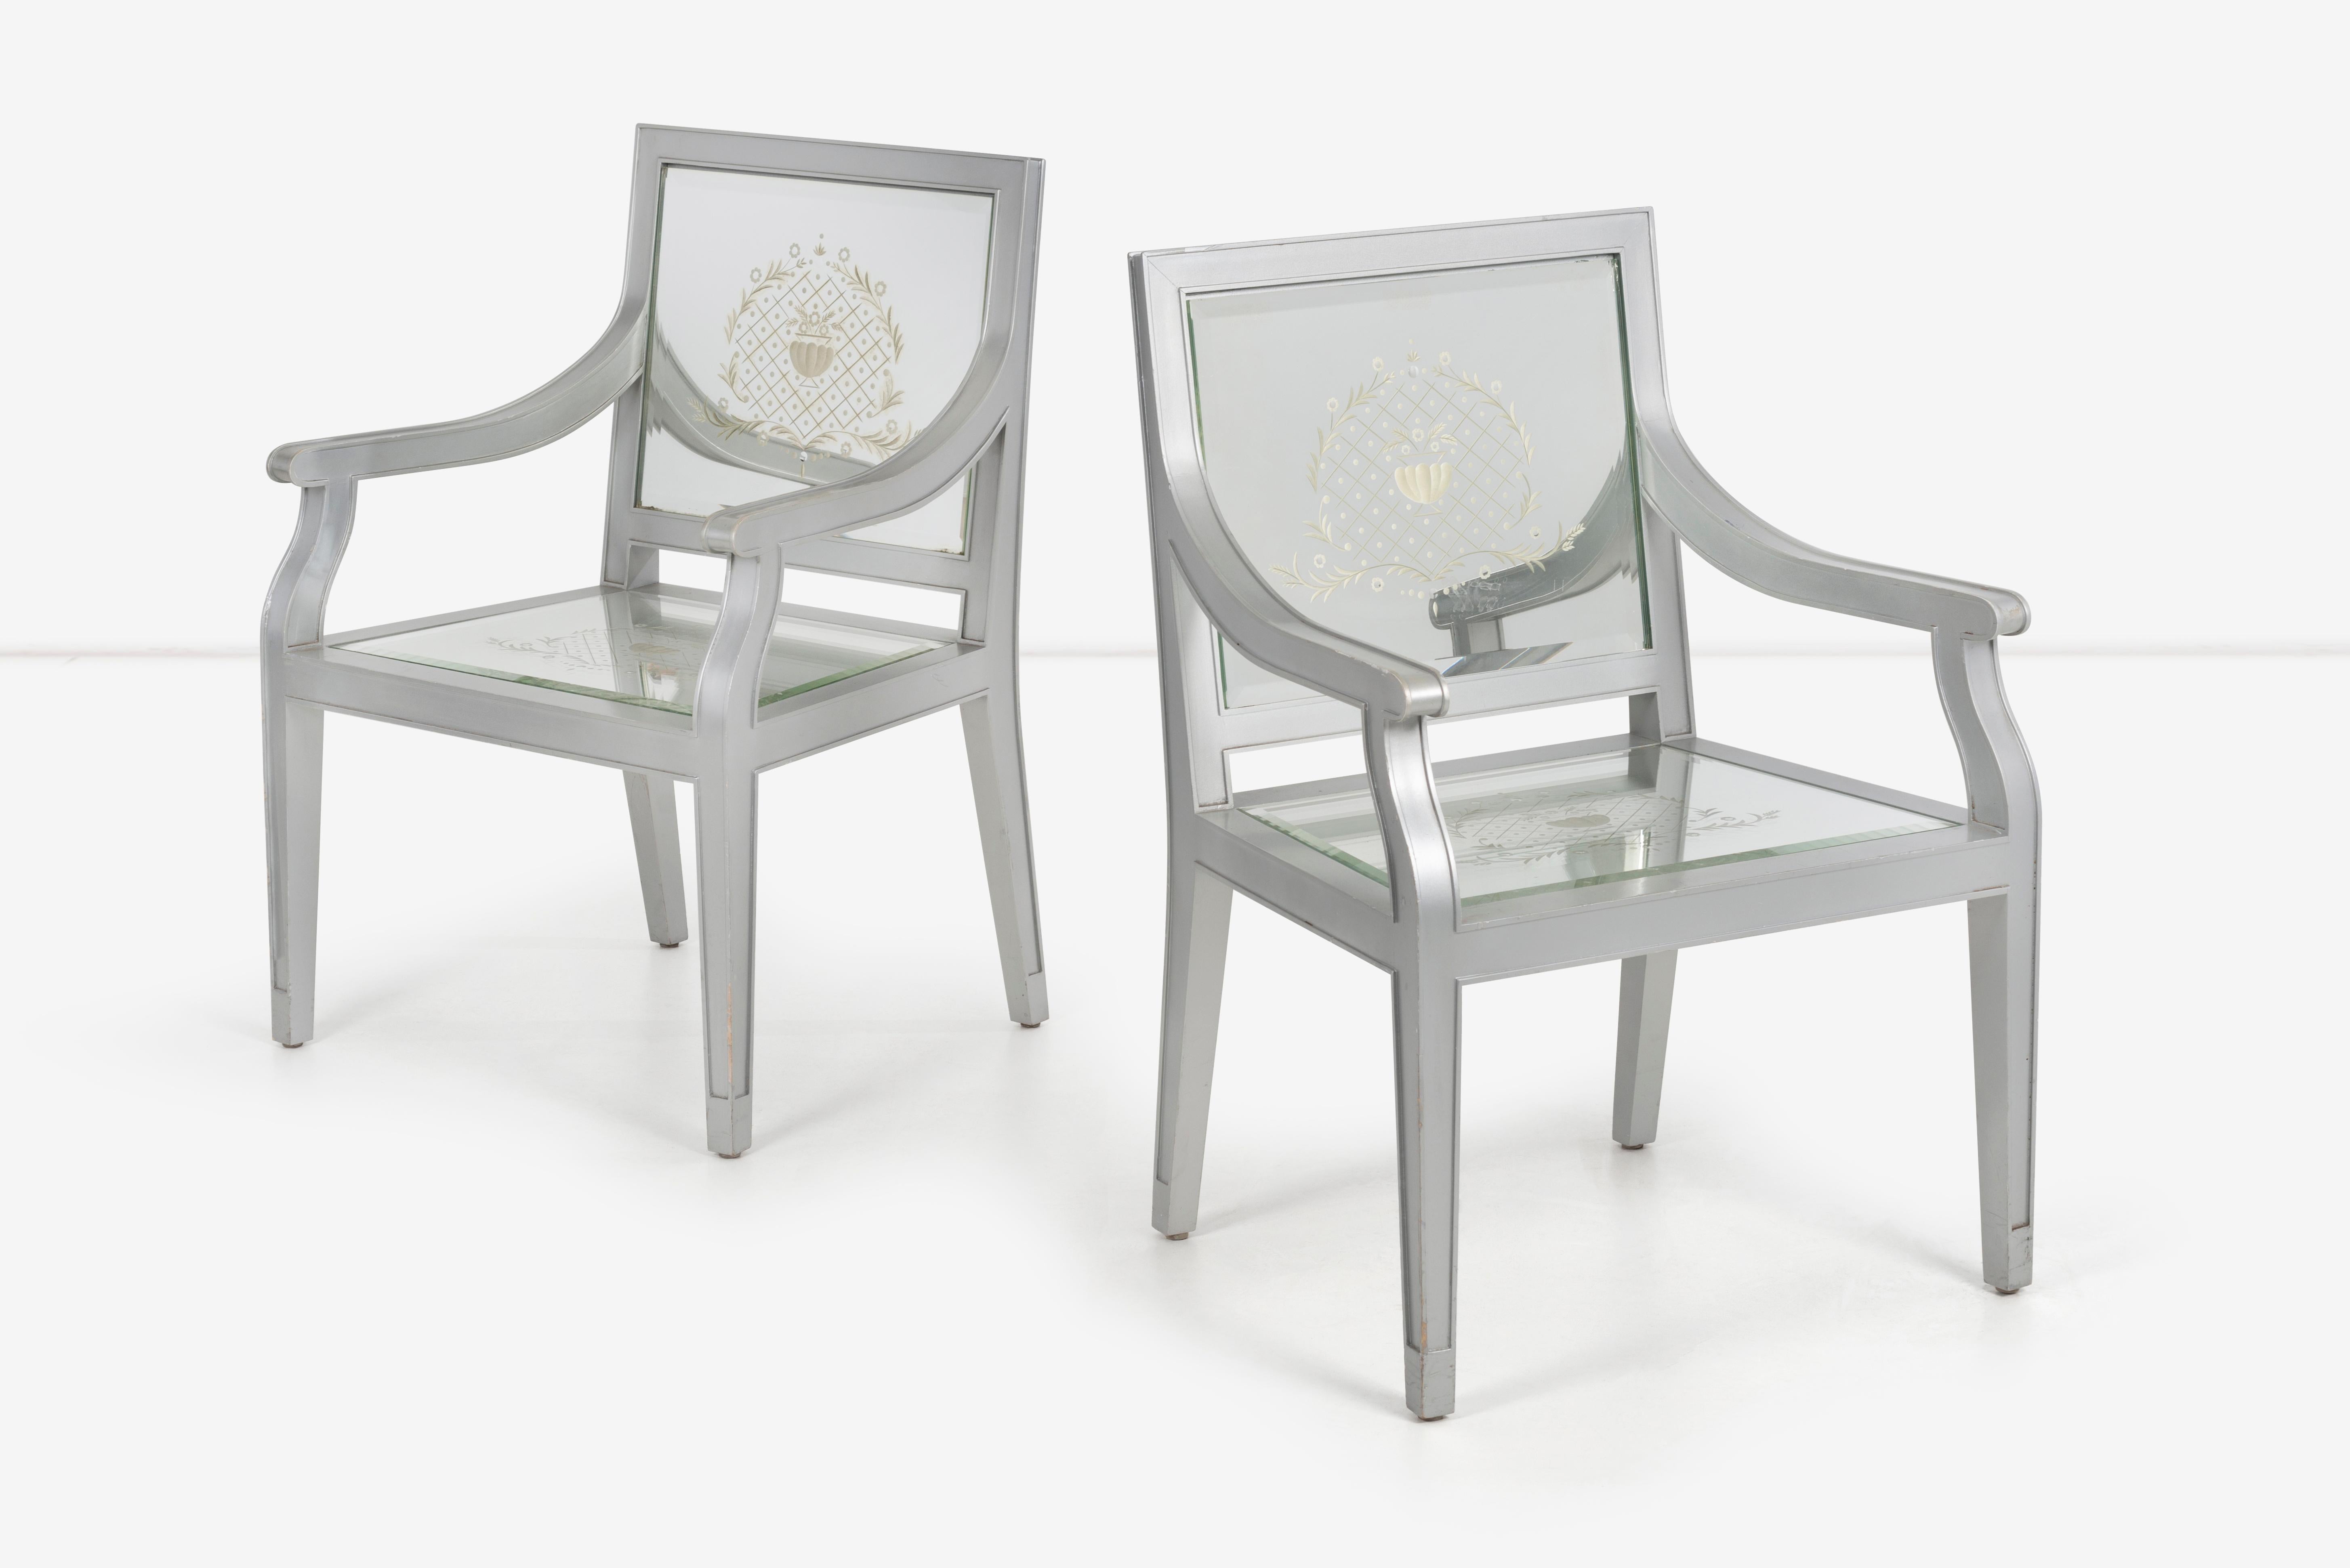 Maßgefertigte Stühle im Louis-XVI-Stil von Phillip Starck, Cliff Hotel San Francisco, silberfarbenes Holz mit geschliffenem Spiegelglas auf Sitz und Rückenlehne, entworfen von Thierry Duclos von Mirostyle, Paris.